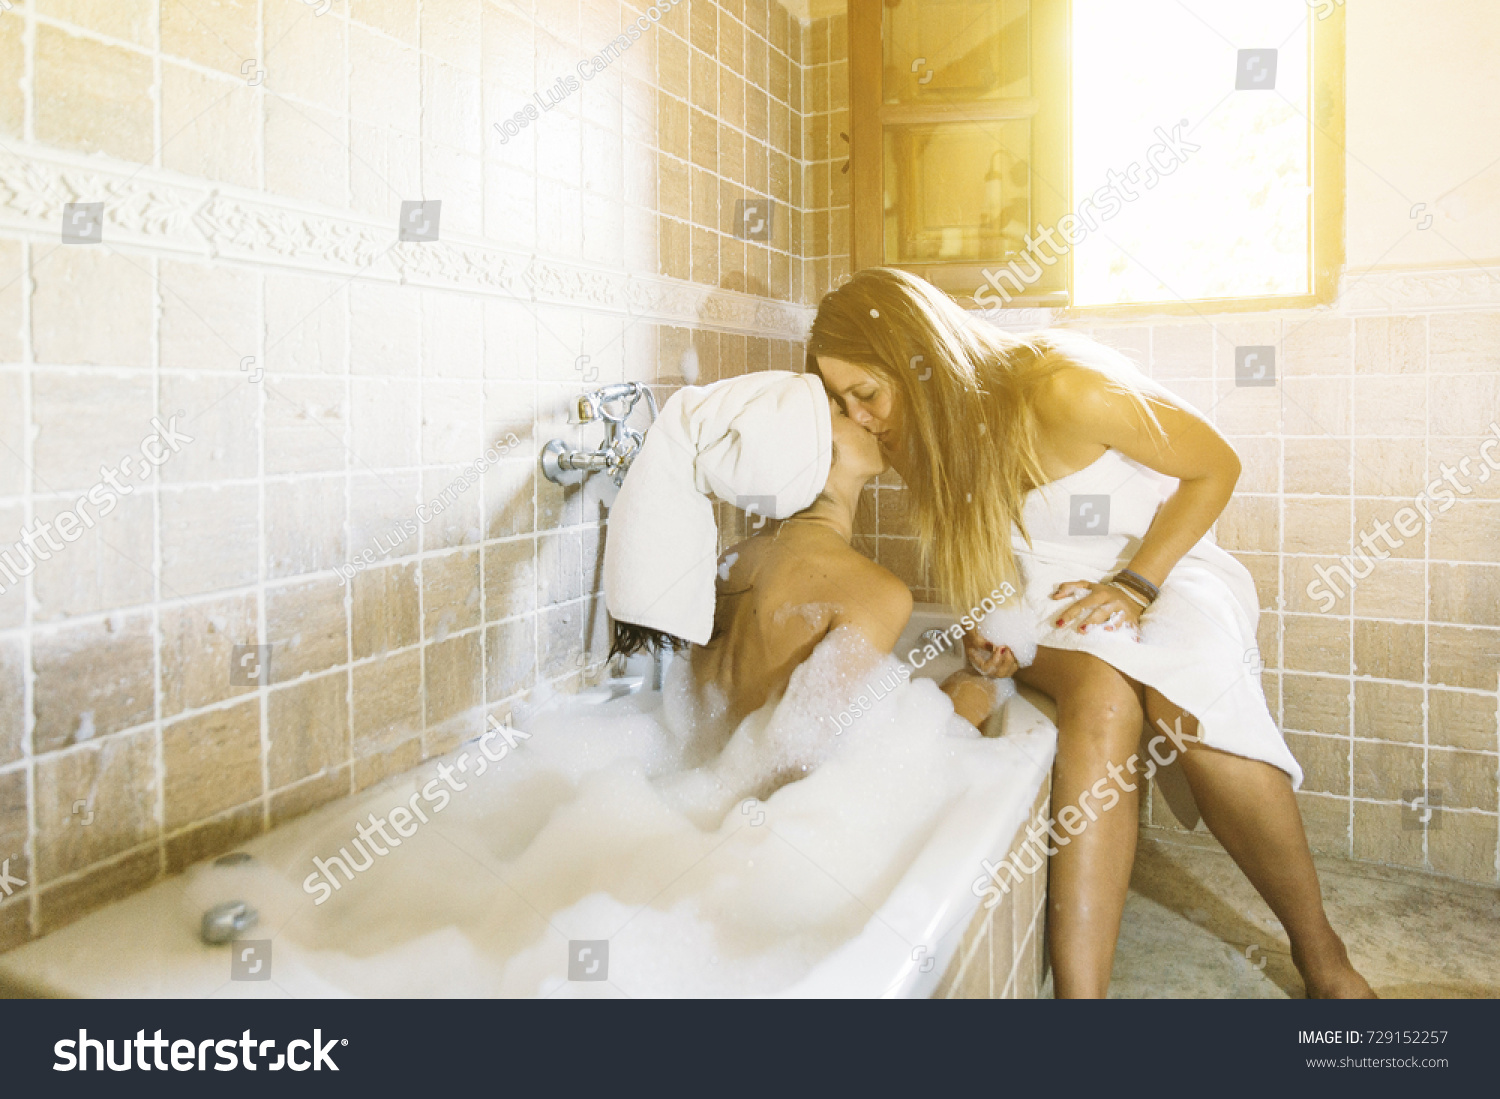 Lesbians Taking Shower Together